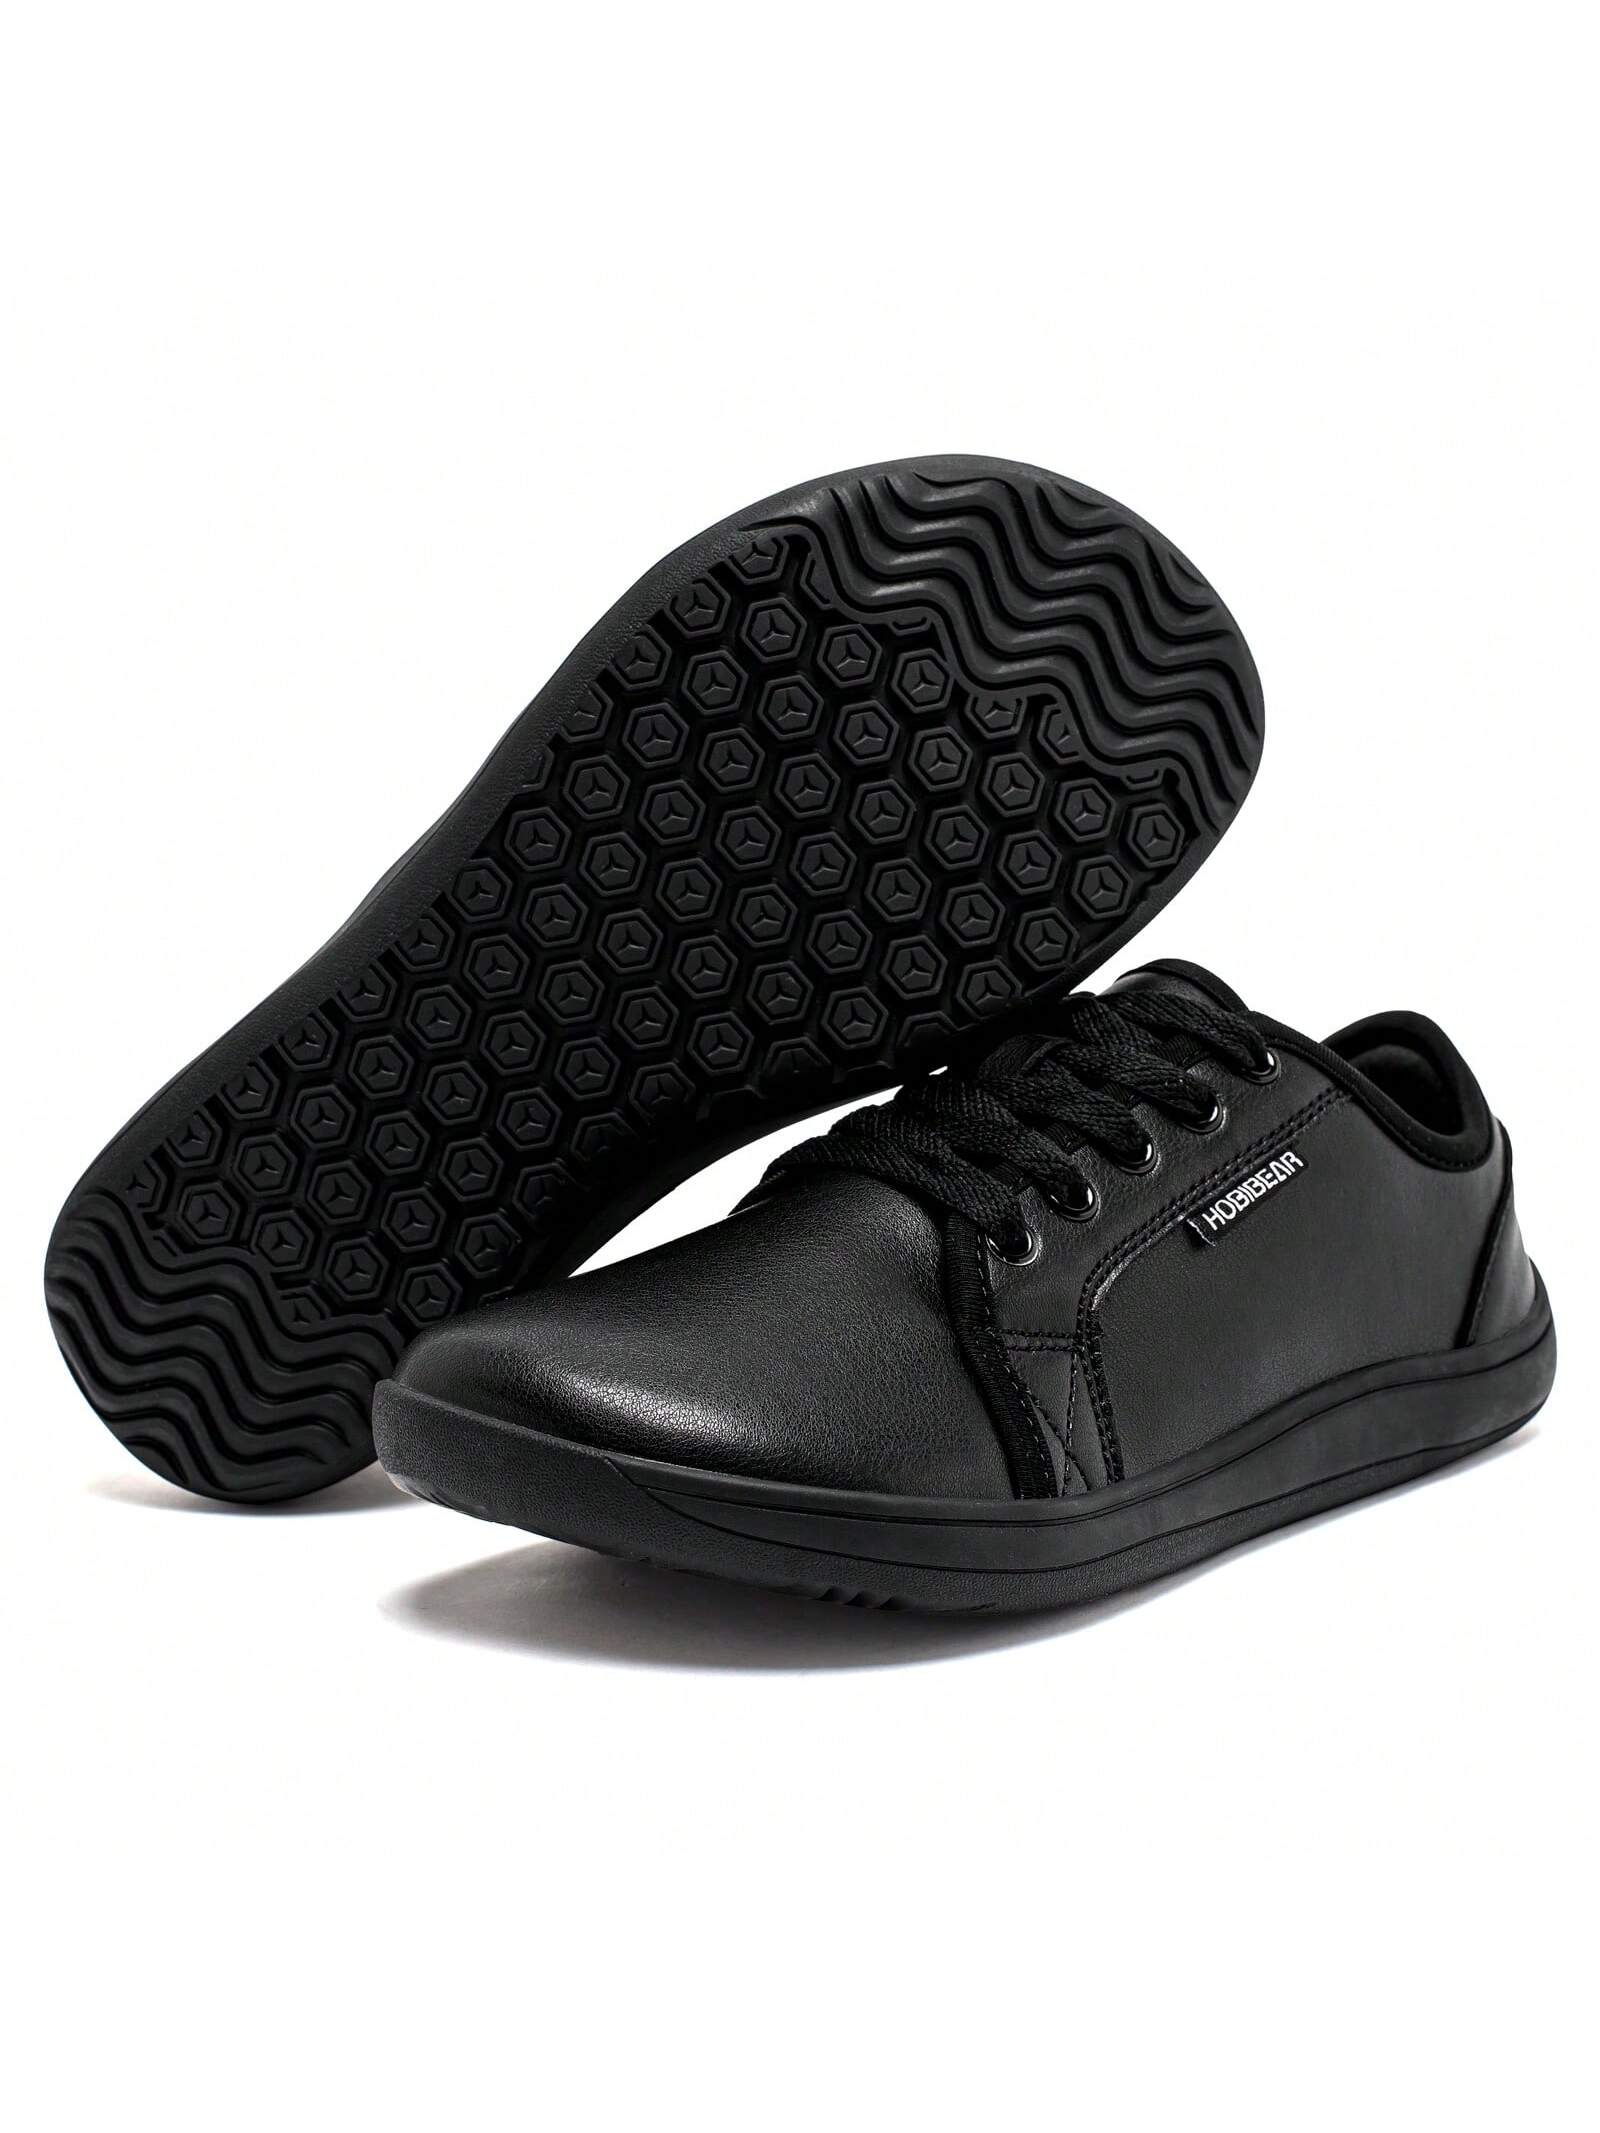 Спортивная обувь унисекс с широким носком, черный туфли унисекс для взрослых обувь для бальных танцев на шнуровке с разрезом дышащая